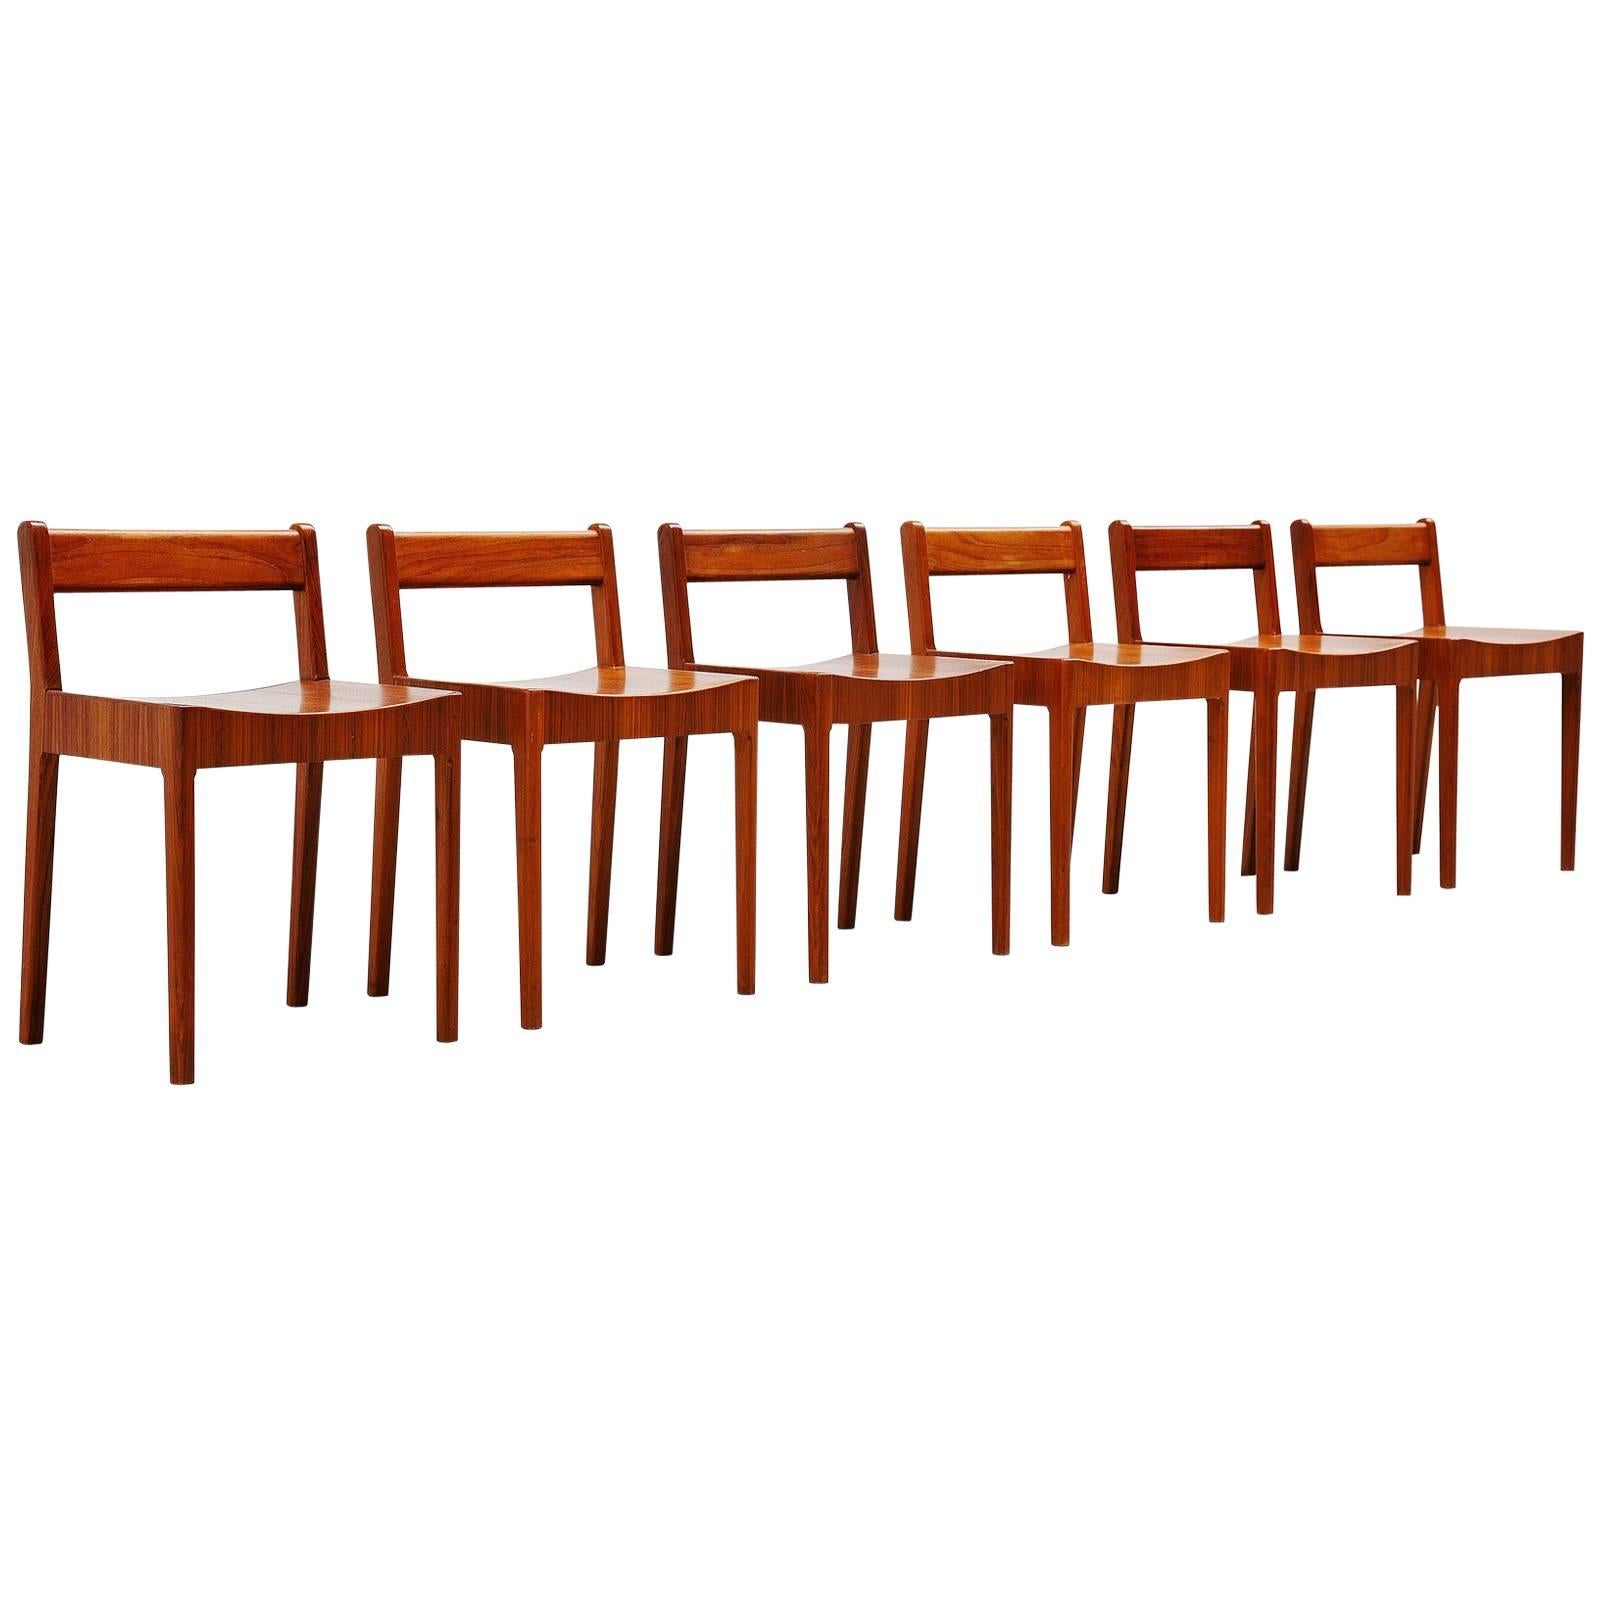 Breakfast Chairs by Plyfa Denmark, 1960